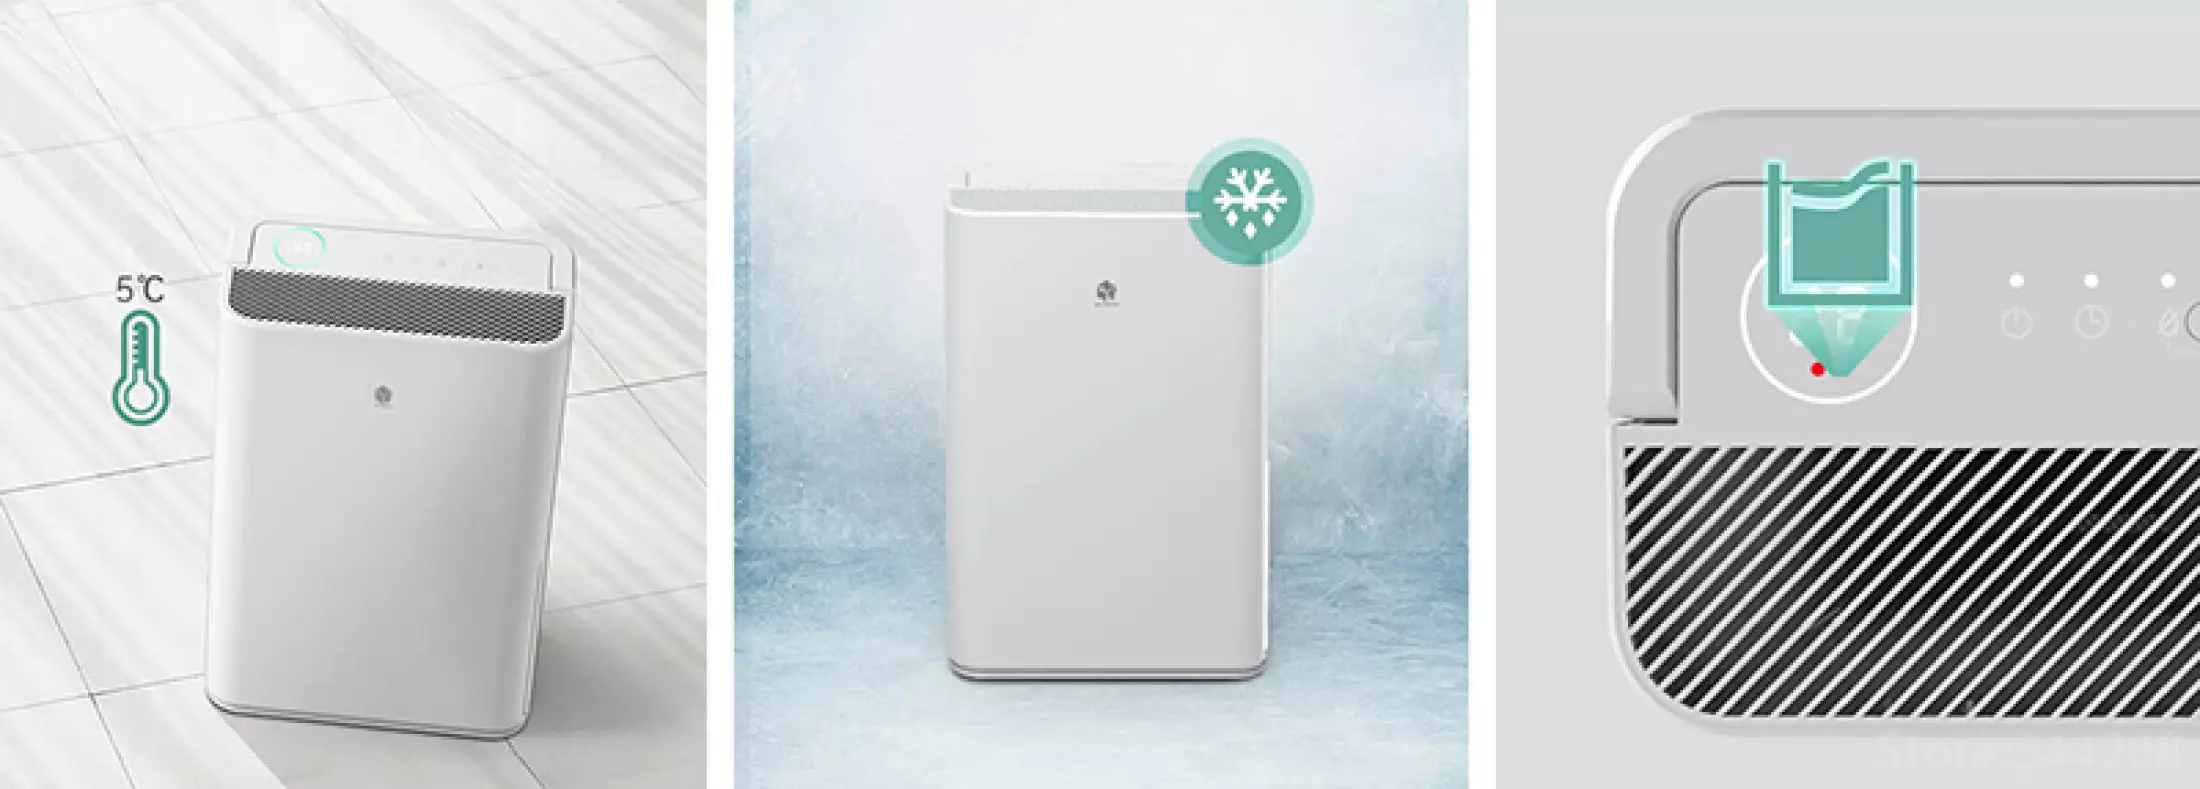 รูปภาพของ NEW WIDETECH Electric Air Dehfier 12L / 18L / 30L for home Mon Dryer heat dehydrator moisture absorber เครื่องดูดความชื้น สามารถเชื่อม App ได้